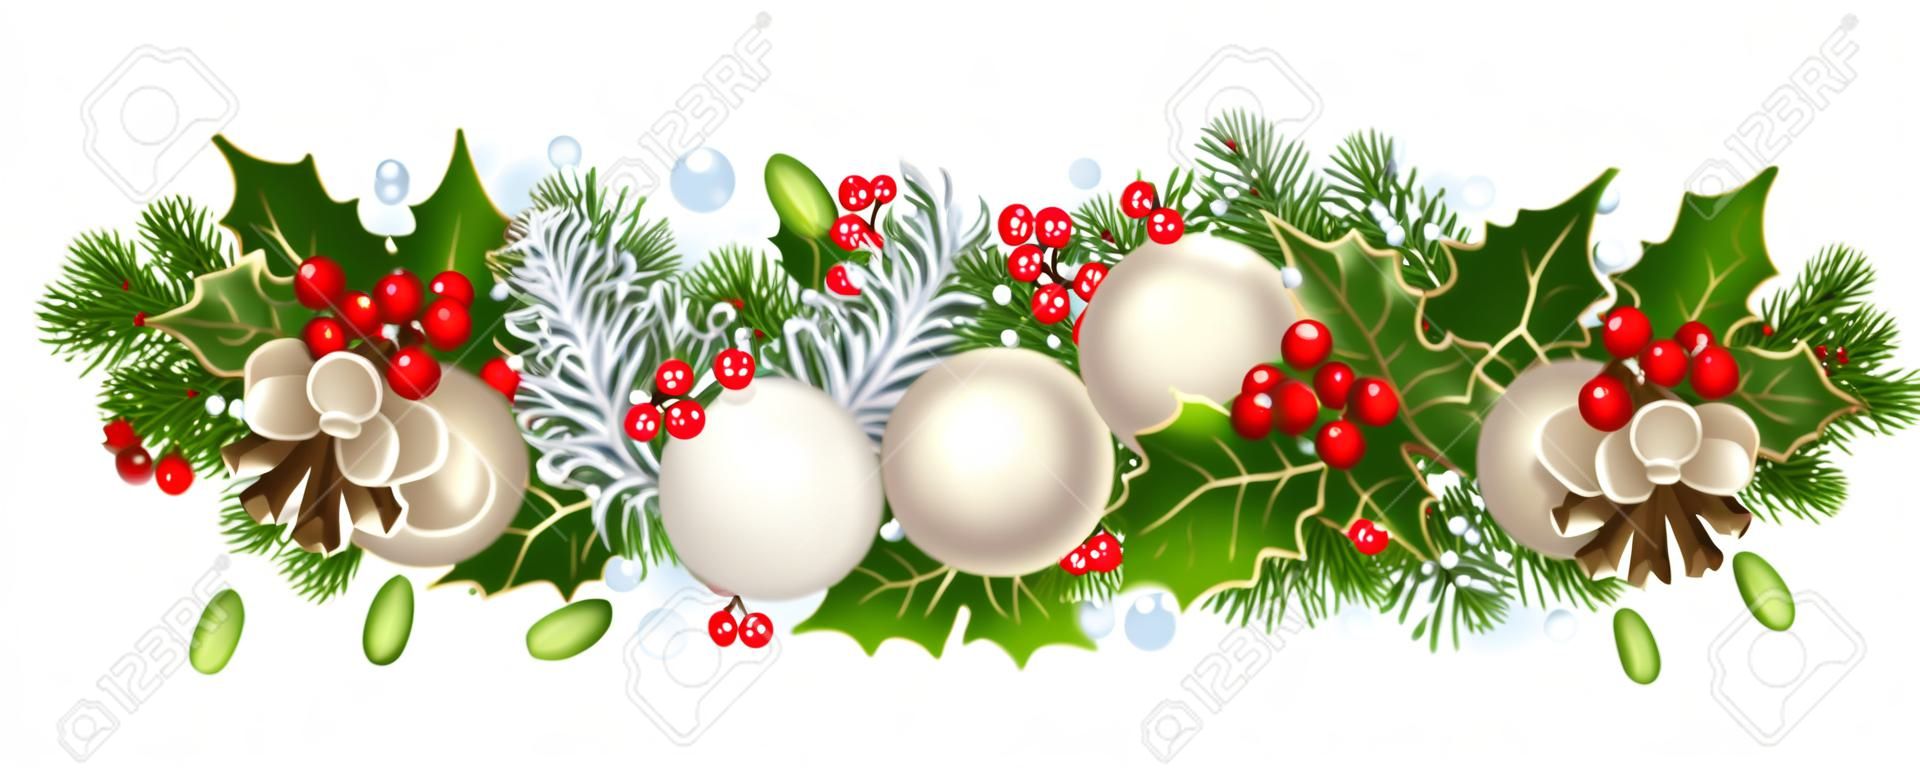 Weihnachten horizontale nahtlose Hintergrund. Vektor-Illustration.